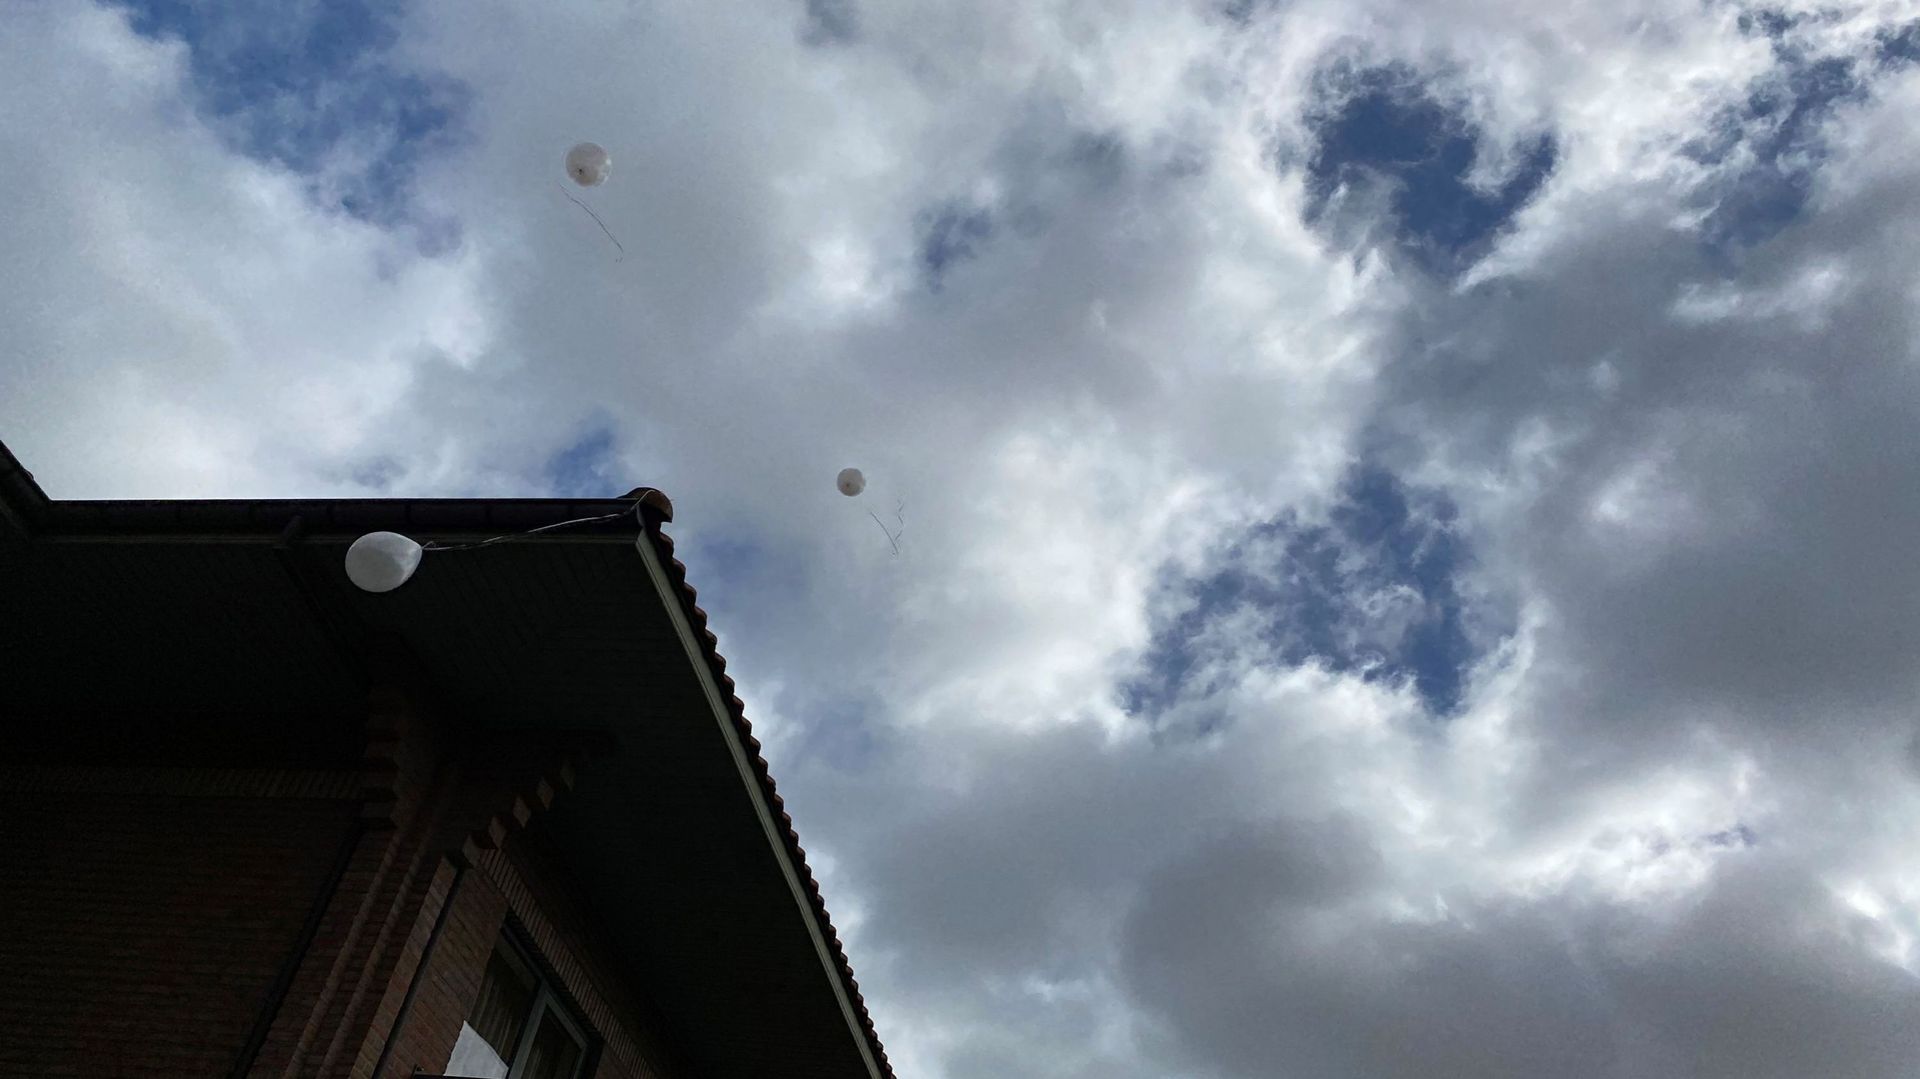 Les ballons qui se sont envolés et un qui s'accroche, symboliquement diront certains, à la toiture